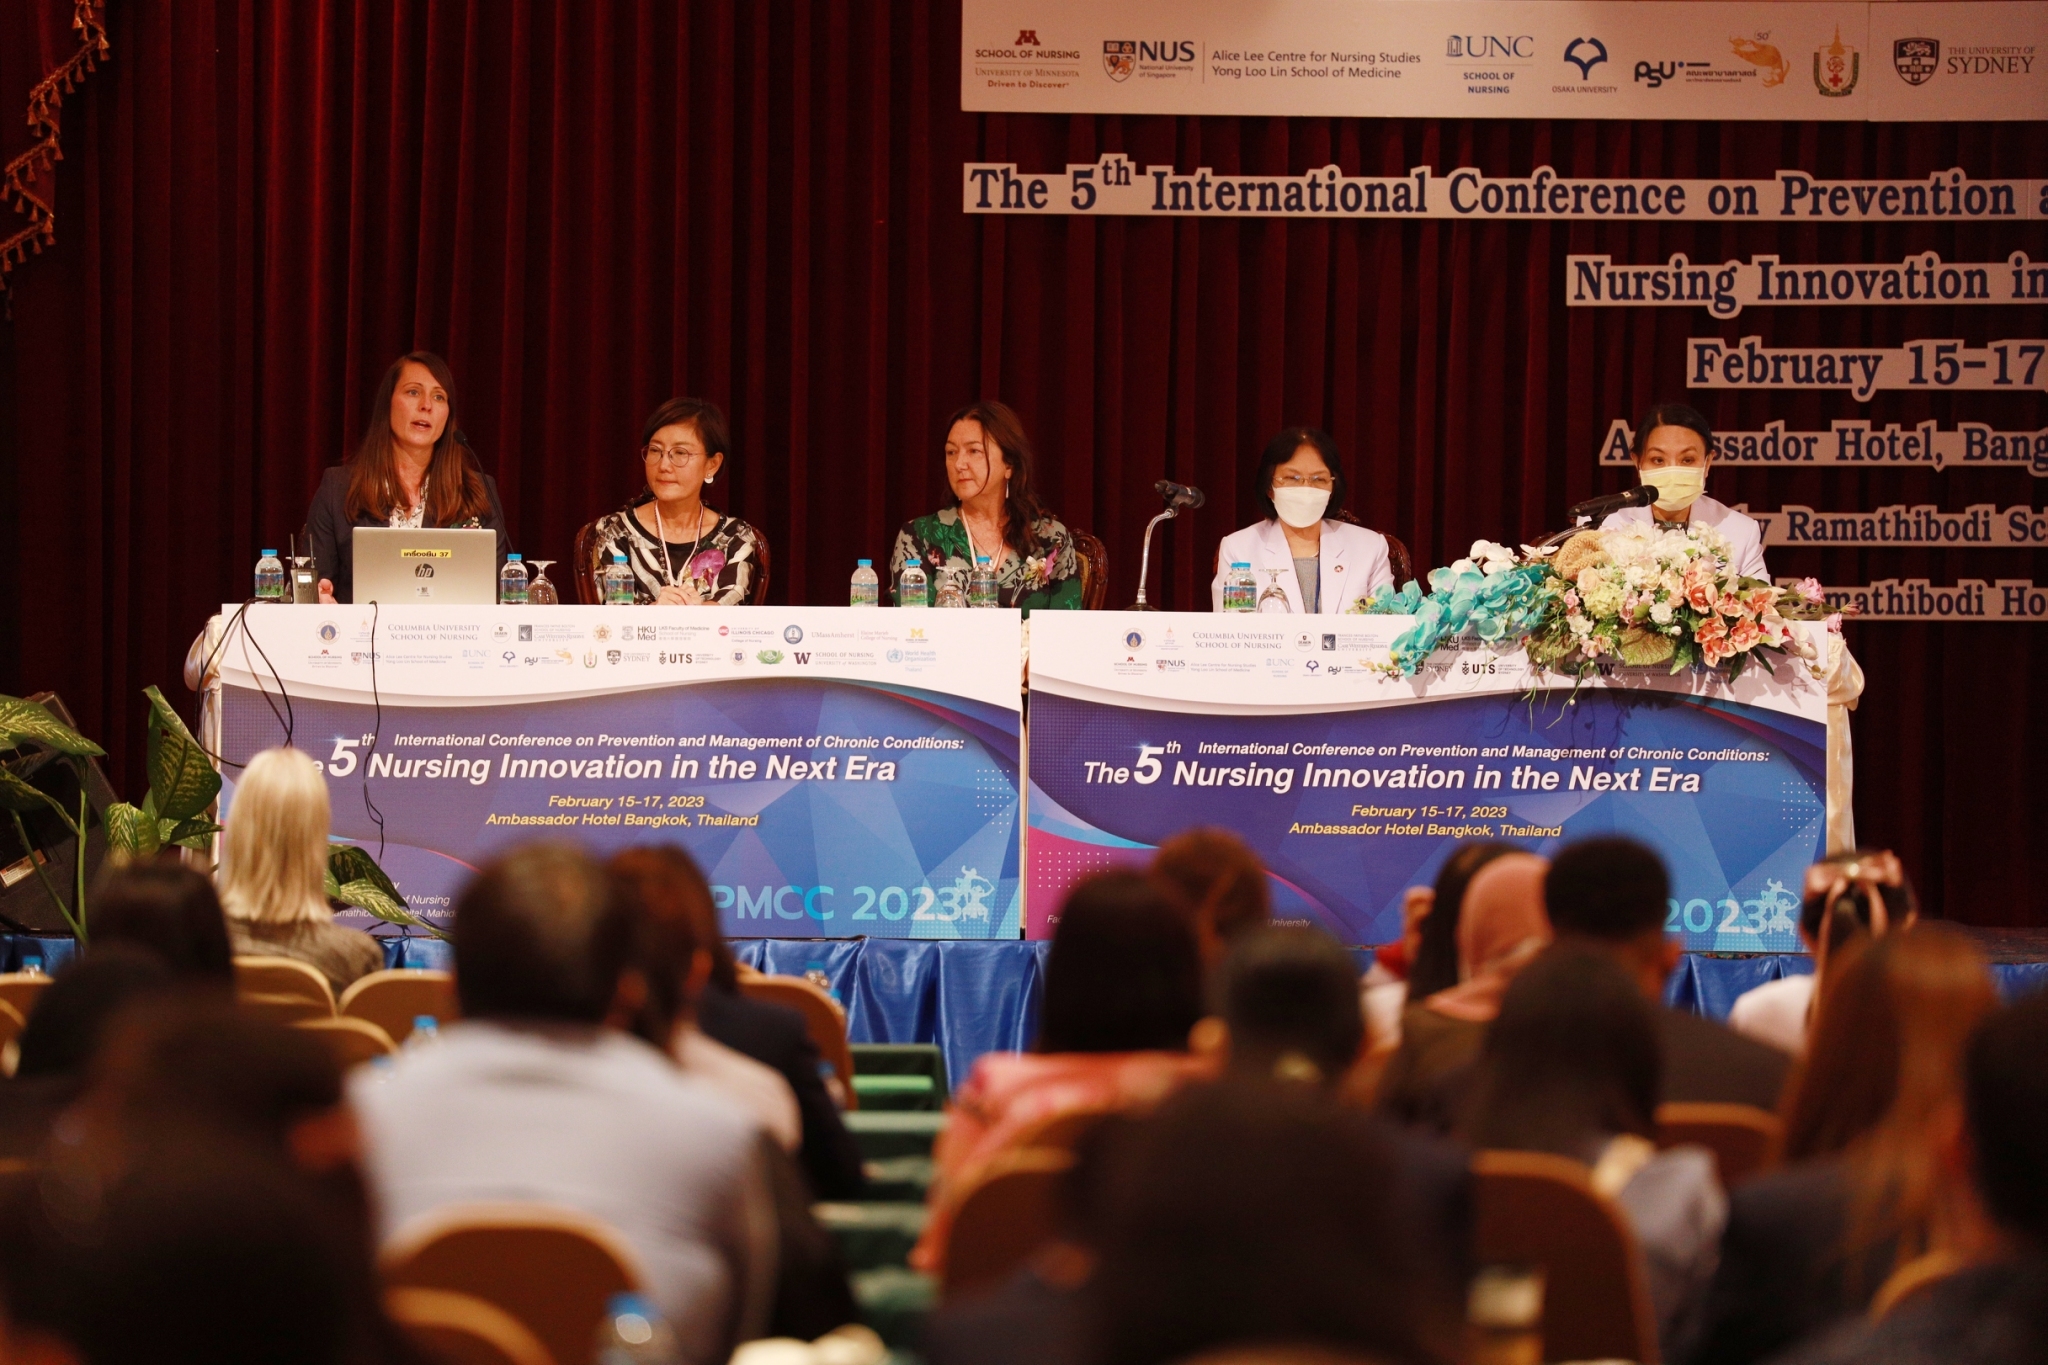 ประชุมวิชาการนานาชาติ ครั้งที่ 5 เรื่อง ”The 5th International Conference on Prevention and Management of Chronic Conditions: Nursing Innovation in the Next Era”